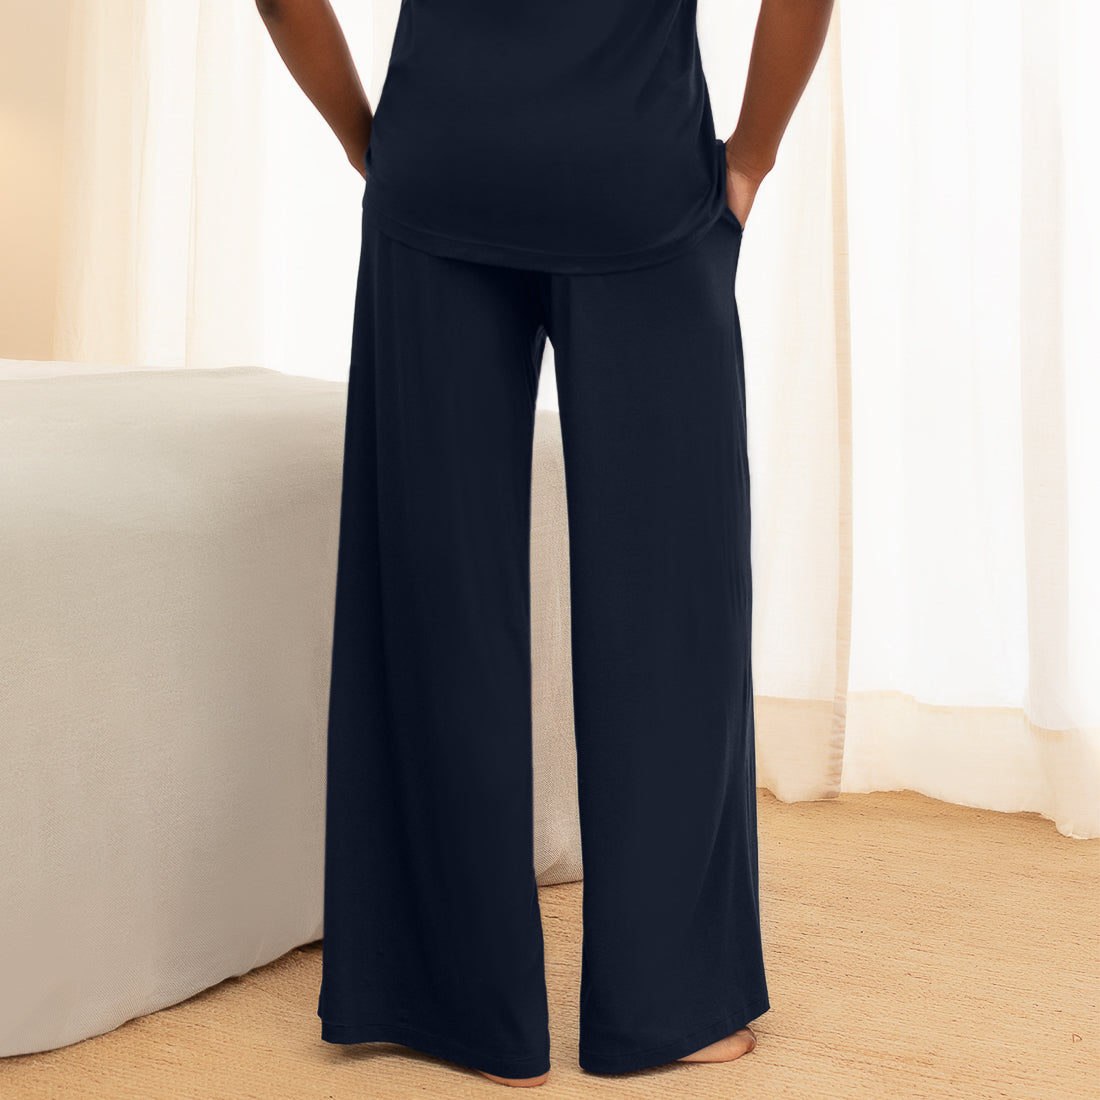 Kühlende Schlafanzug Hose Damen || Navy blue